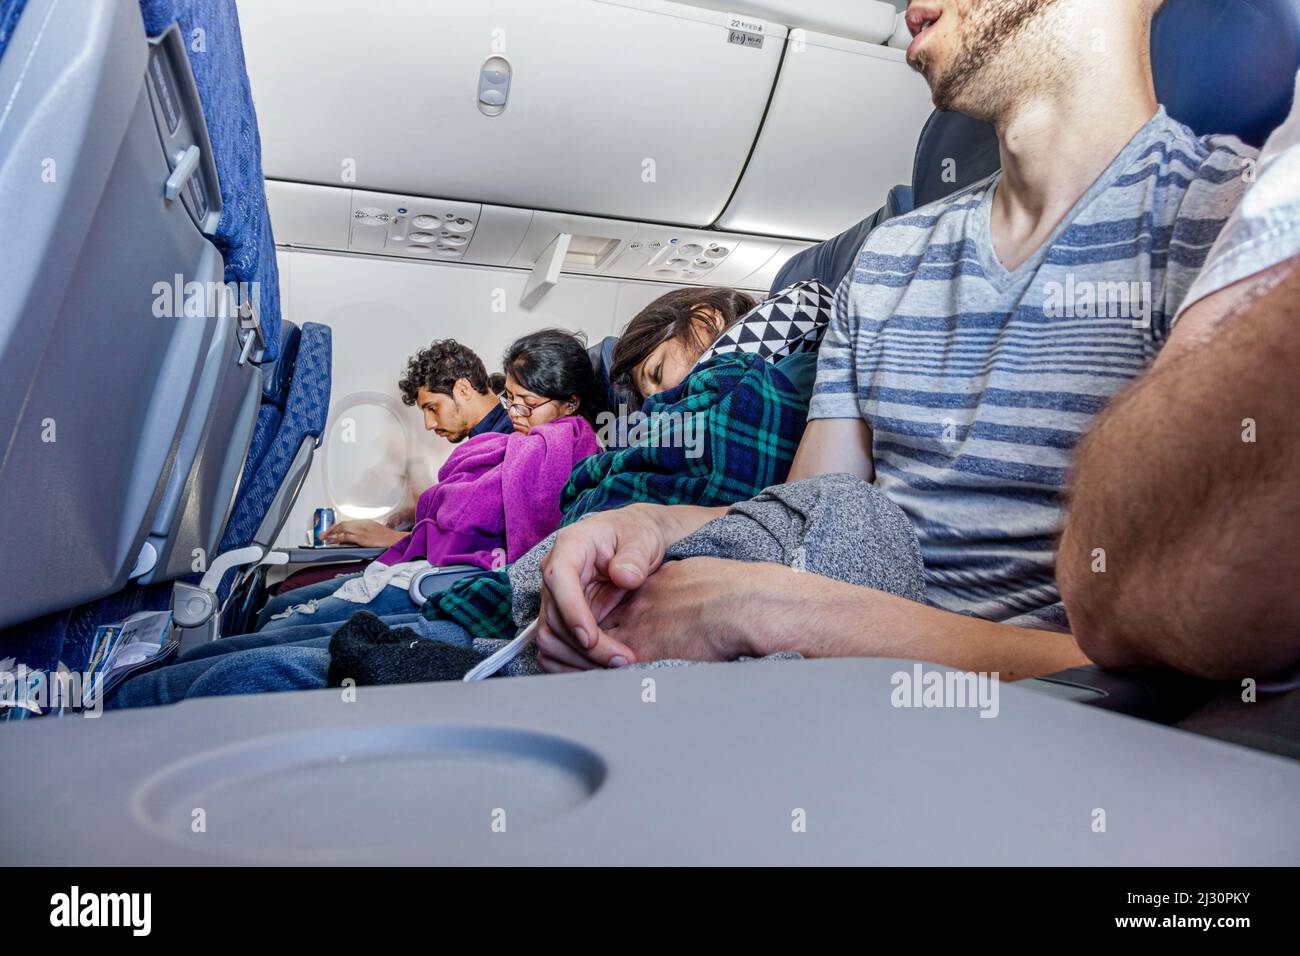 Miami Florida, American Airlines, vuelo de avión de pasajeros de avión de pasajeros de clase turista asientos fila hombres mujeres durmiendo napping a bordo Foto de stock